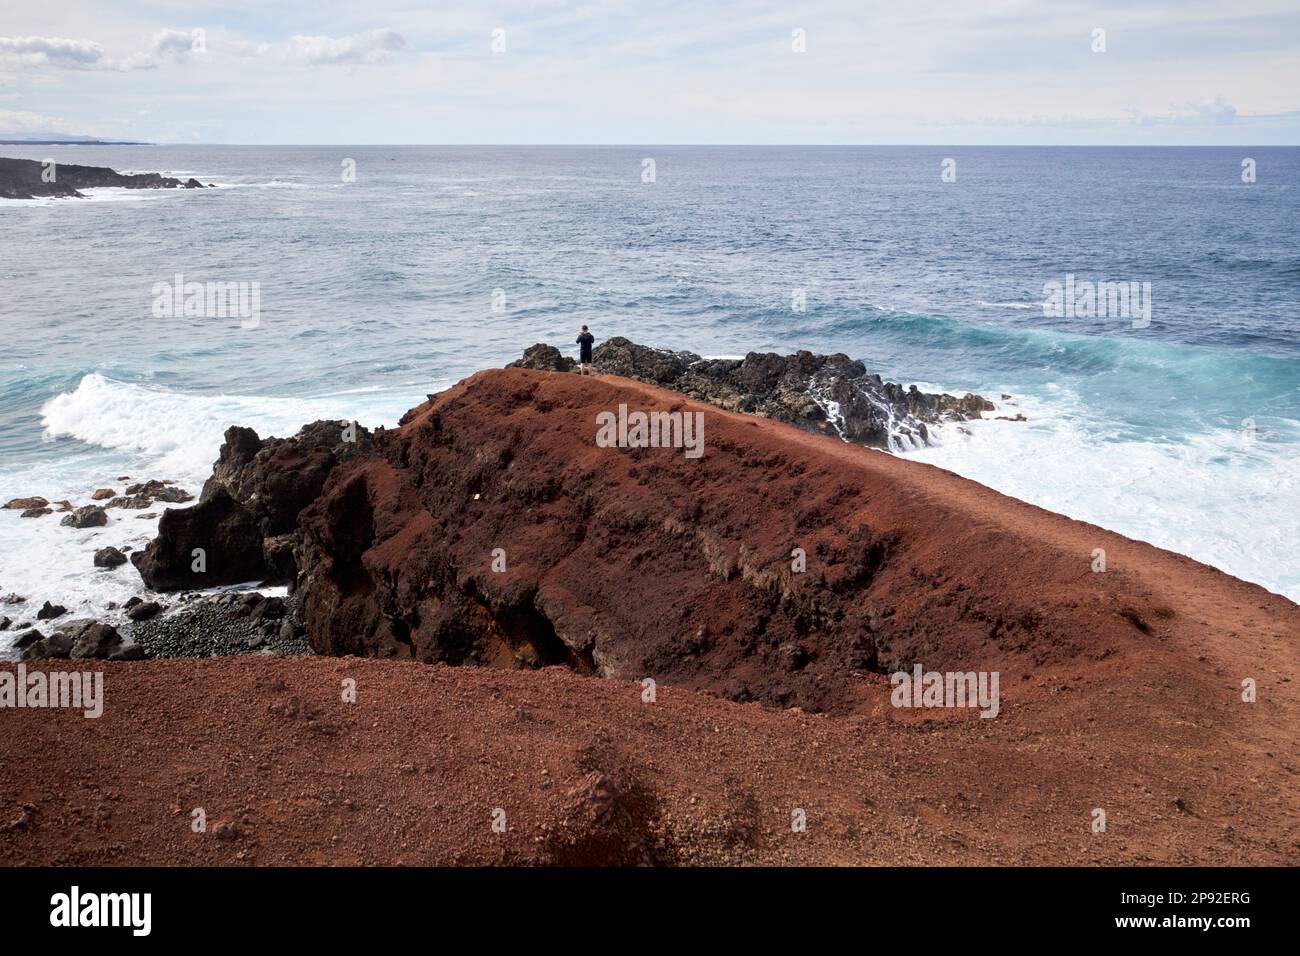 Ein Mann geht zum Ende des mirador el golfo Aussichtspfads Lanzarote, Kanarische Inseln, Spanien Stockfoto